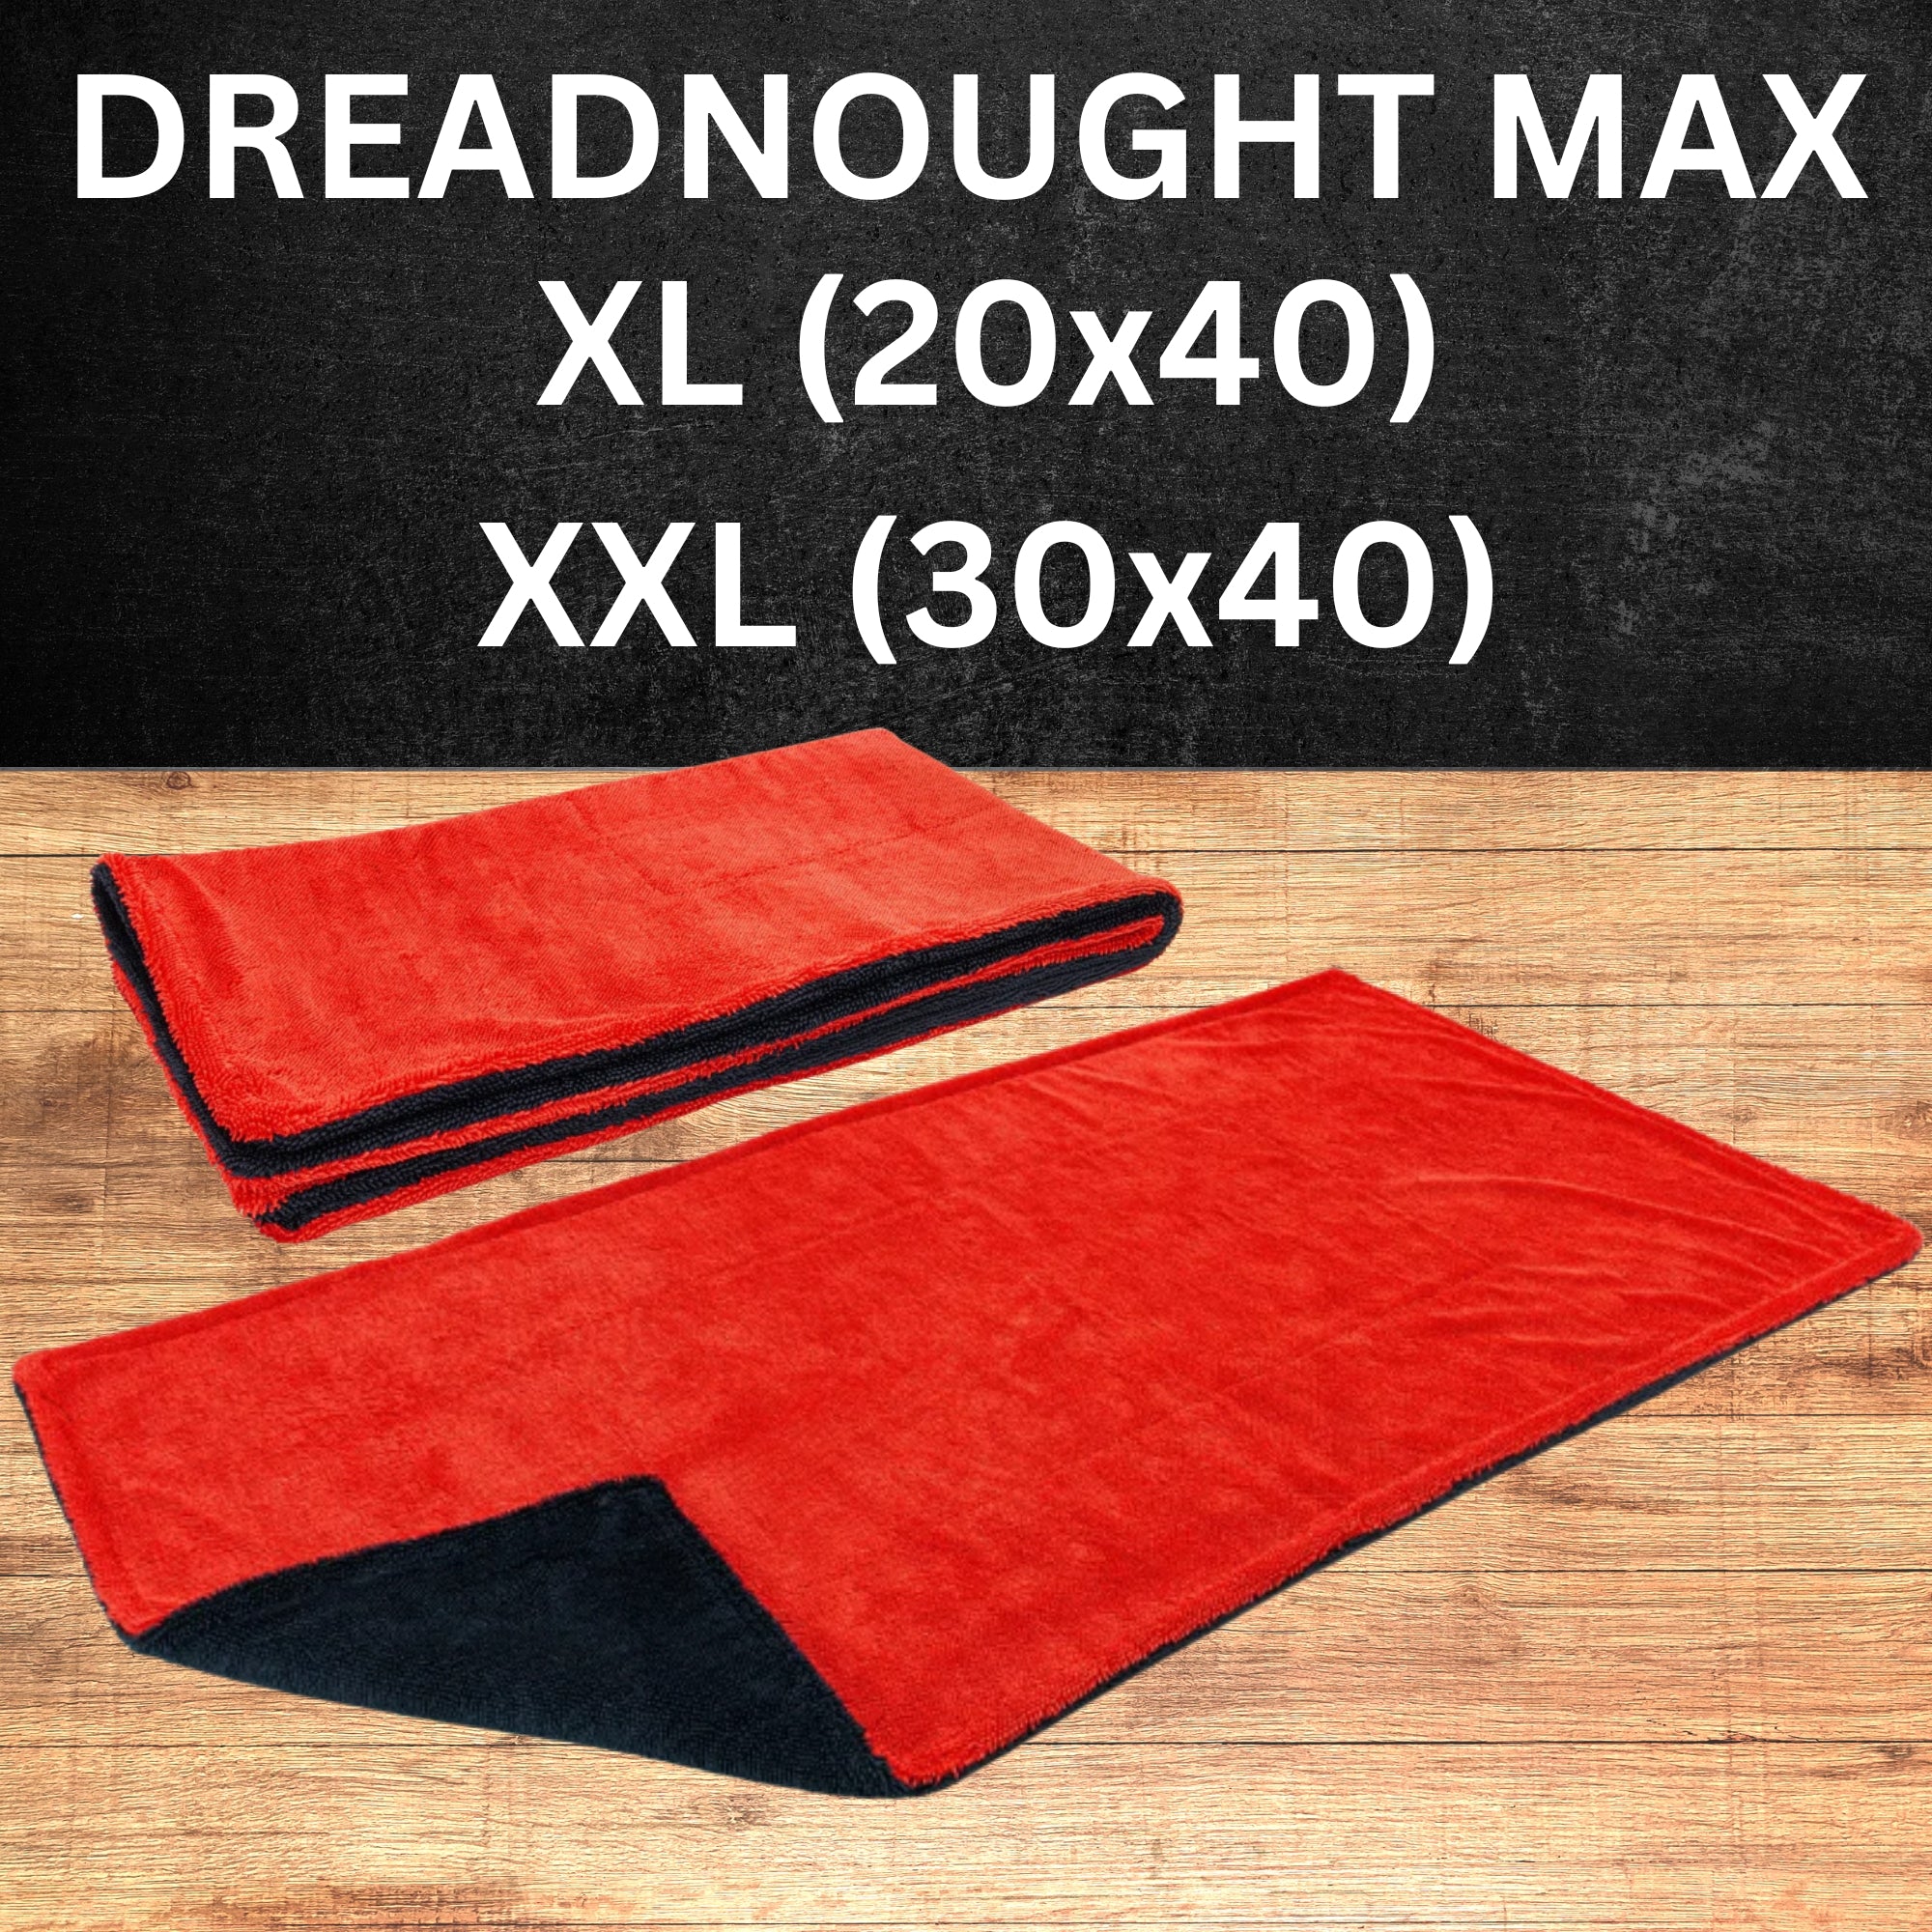 Autofiber Drying Towel: XL Dreadnought Max